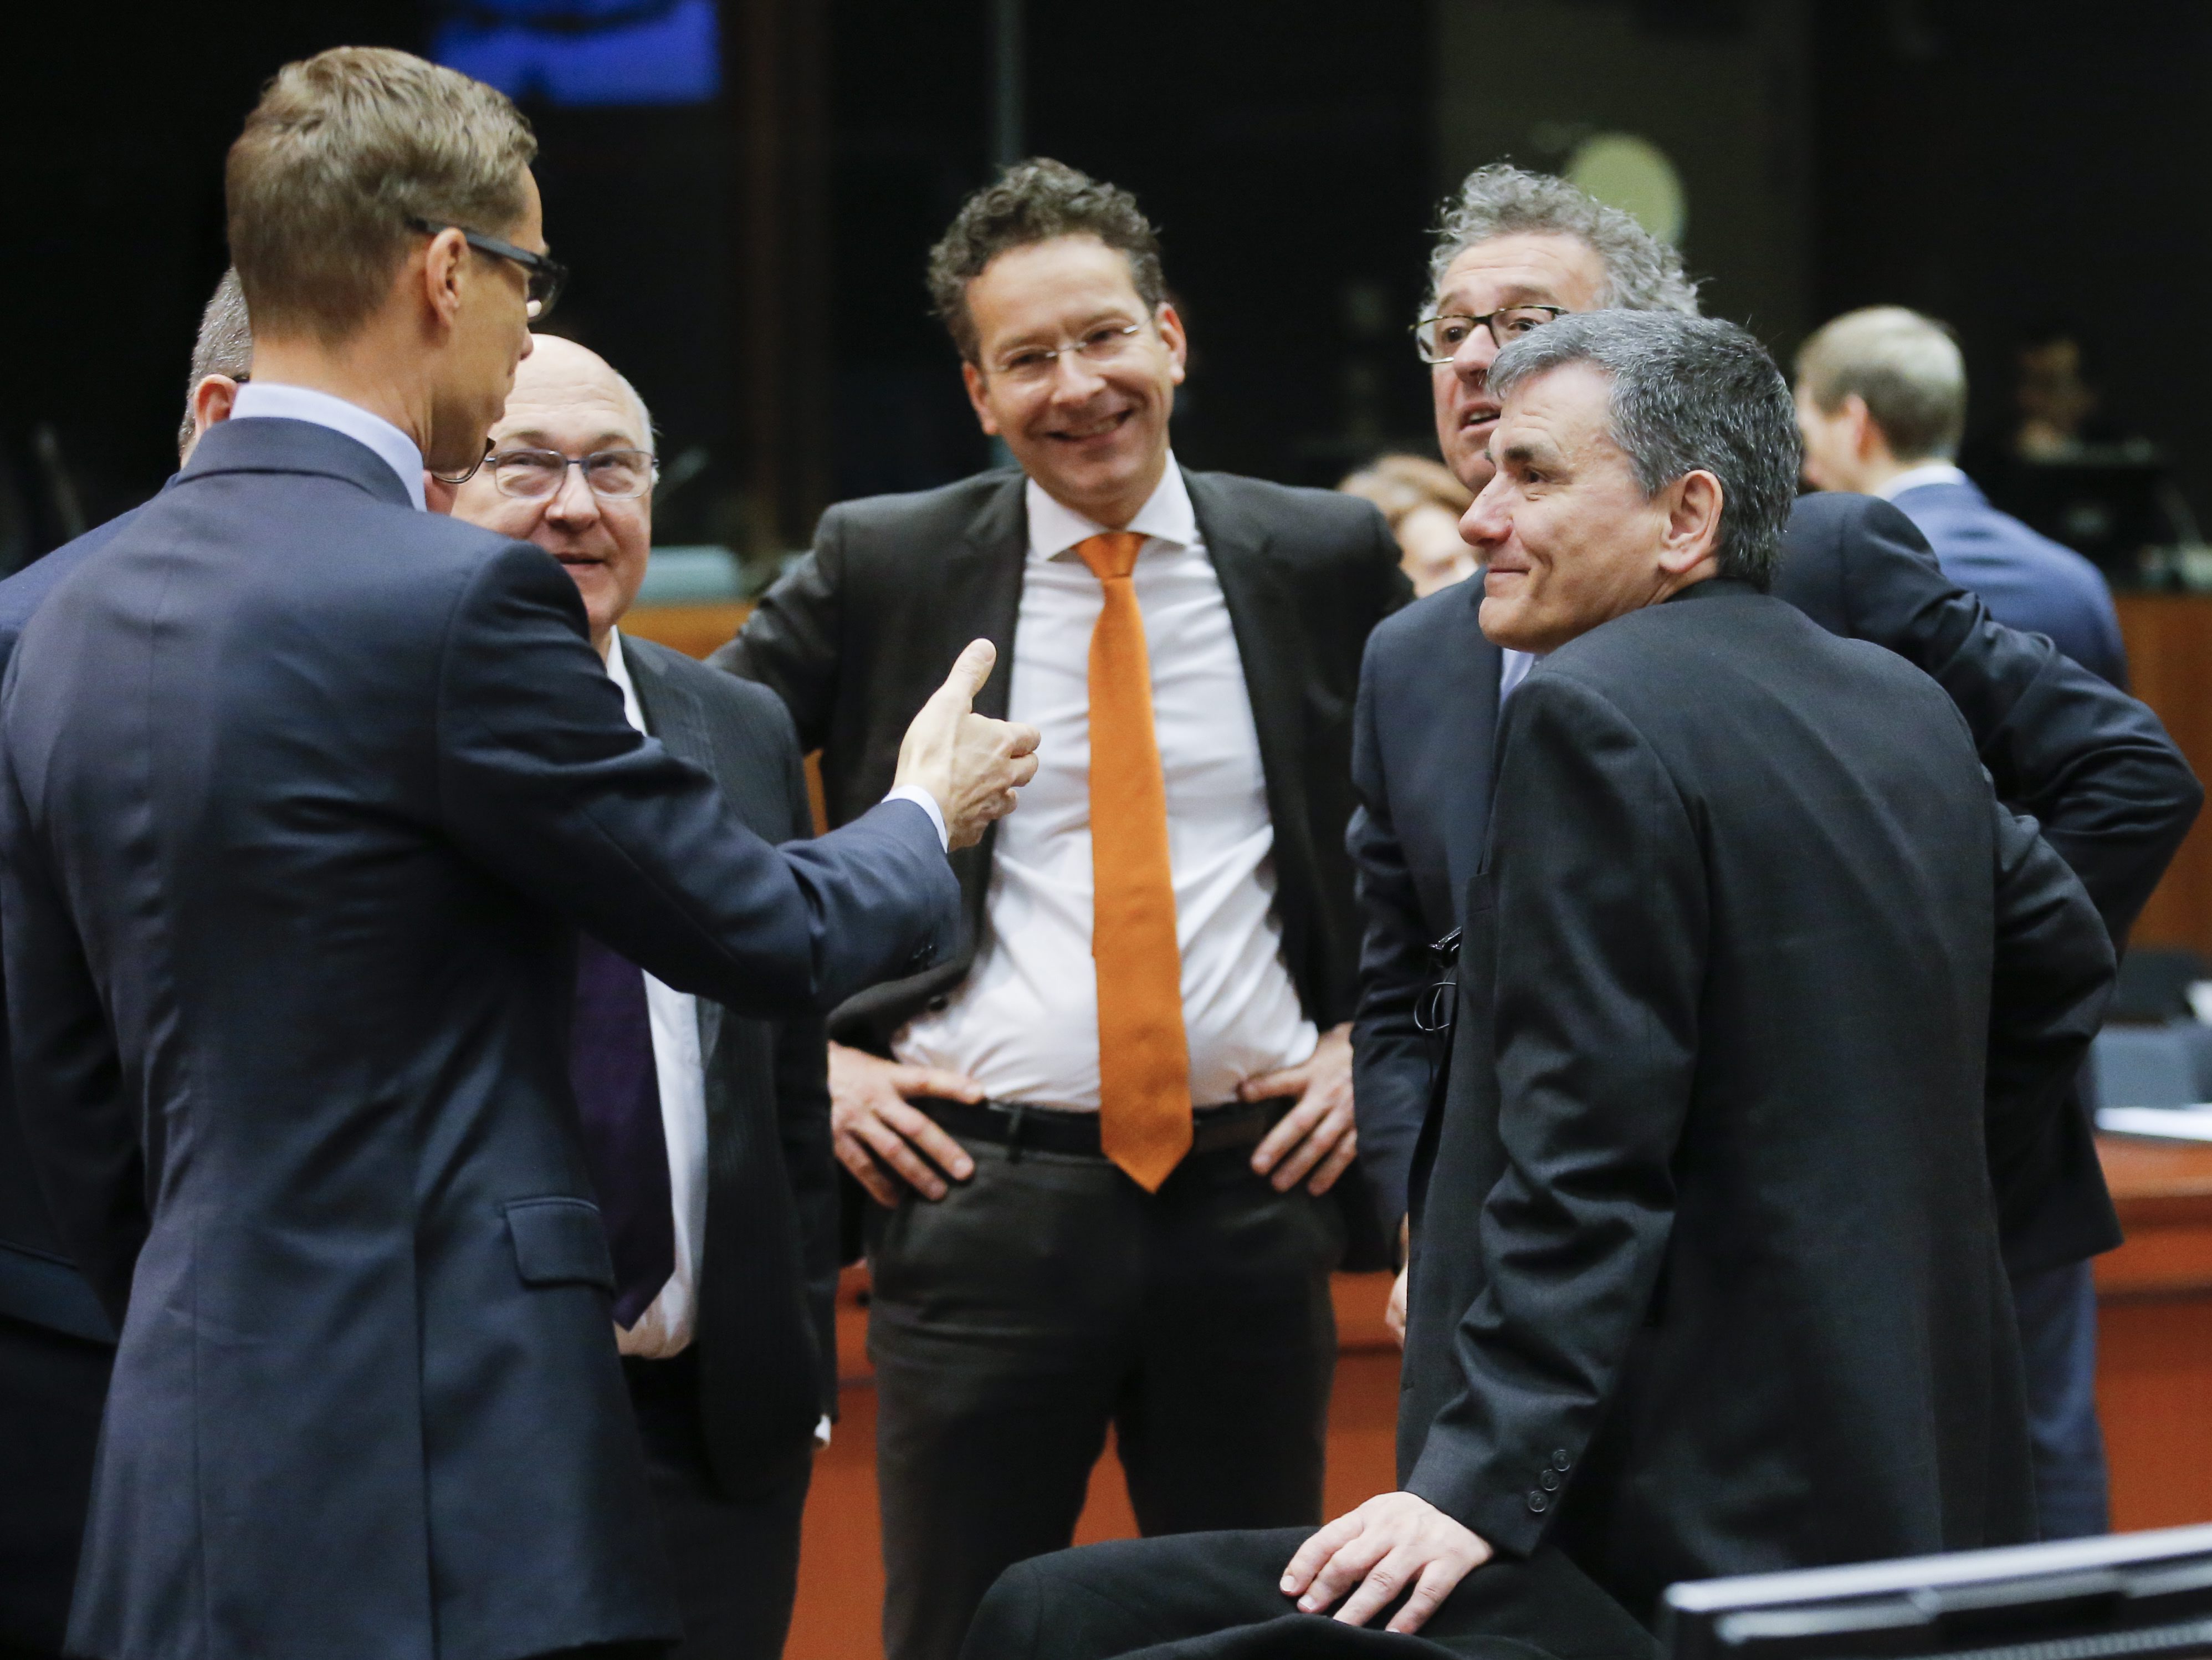 Ντάισελμπλουμ μετά το Eurogroup: Προκαταβολική νομοθέτηση προληπτικών μέτρων για να κλείσει η αξιολόγηση